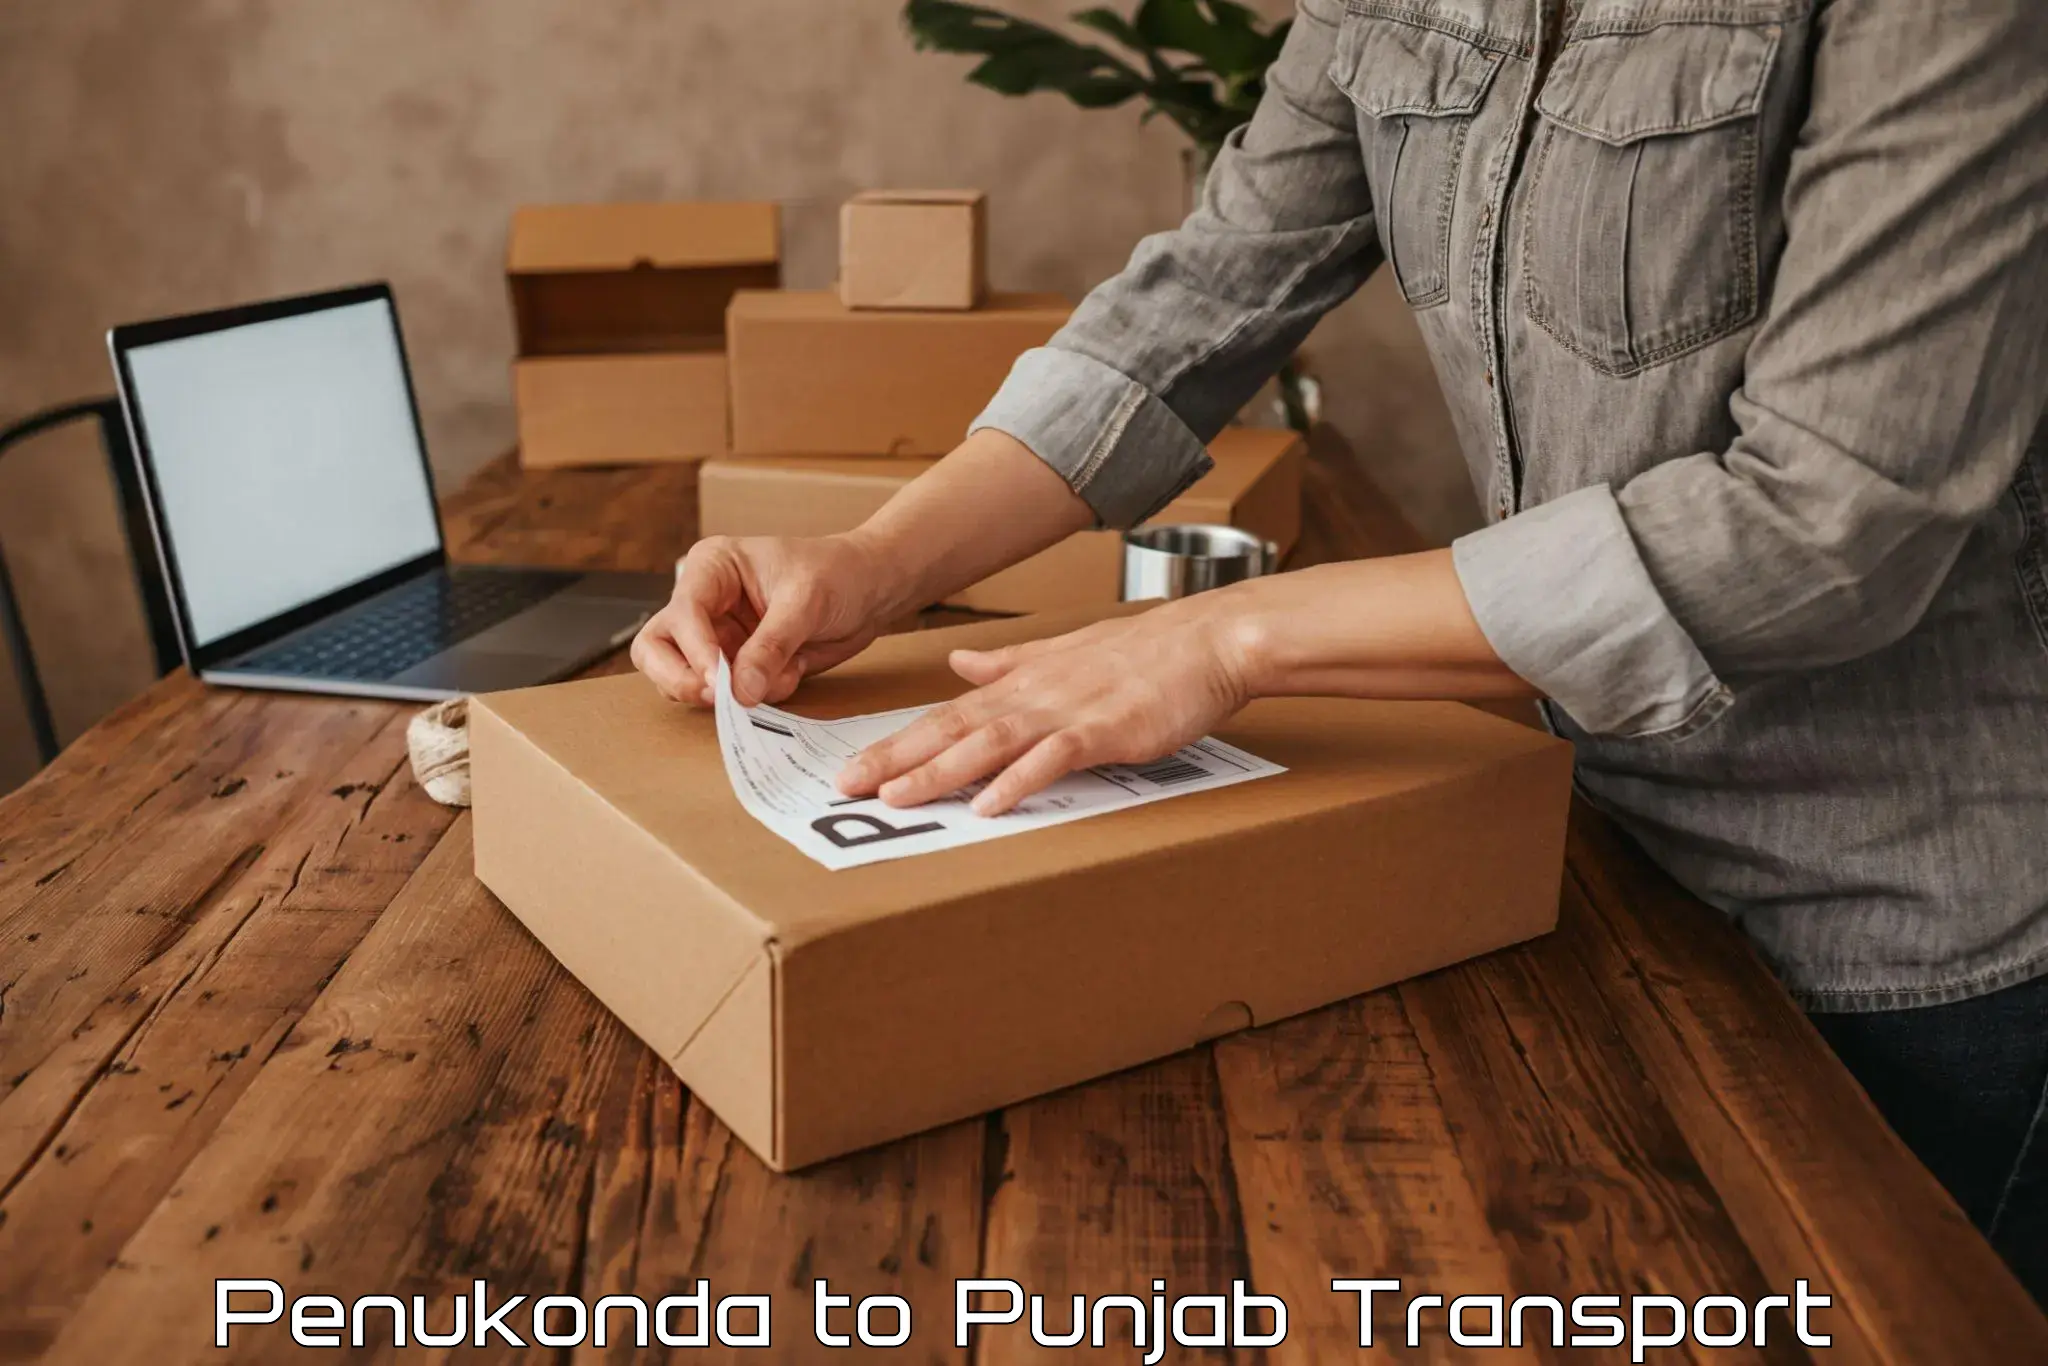 Interstate goods transport in Penukonda to Punjab